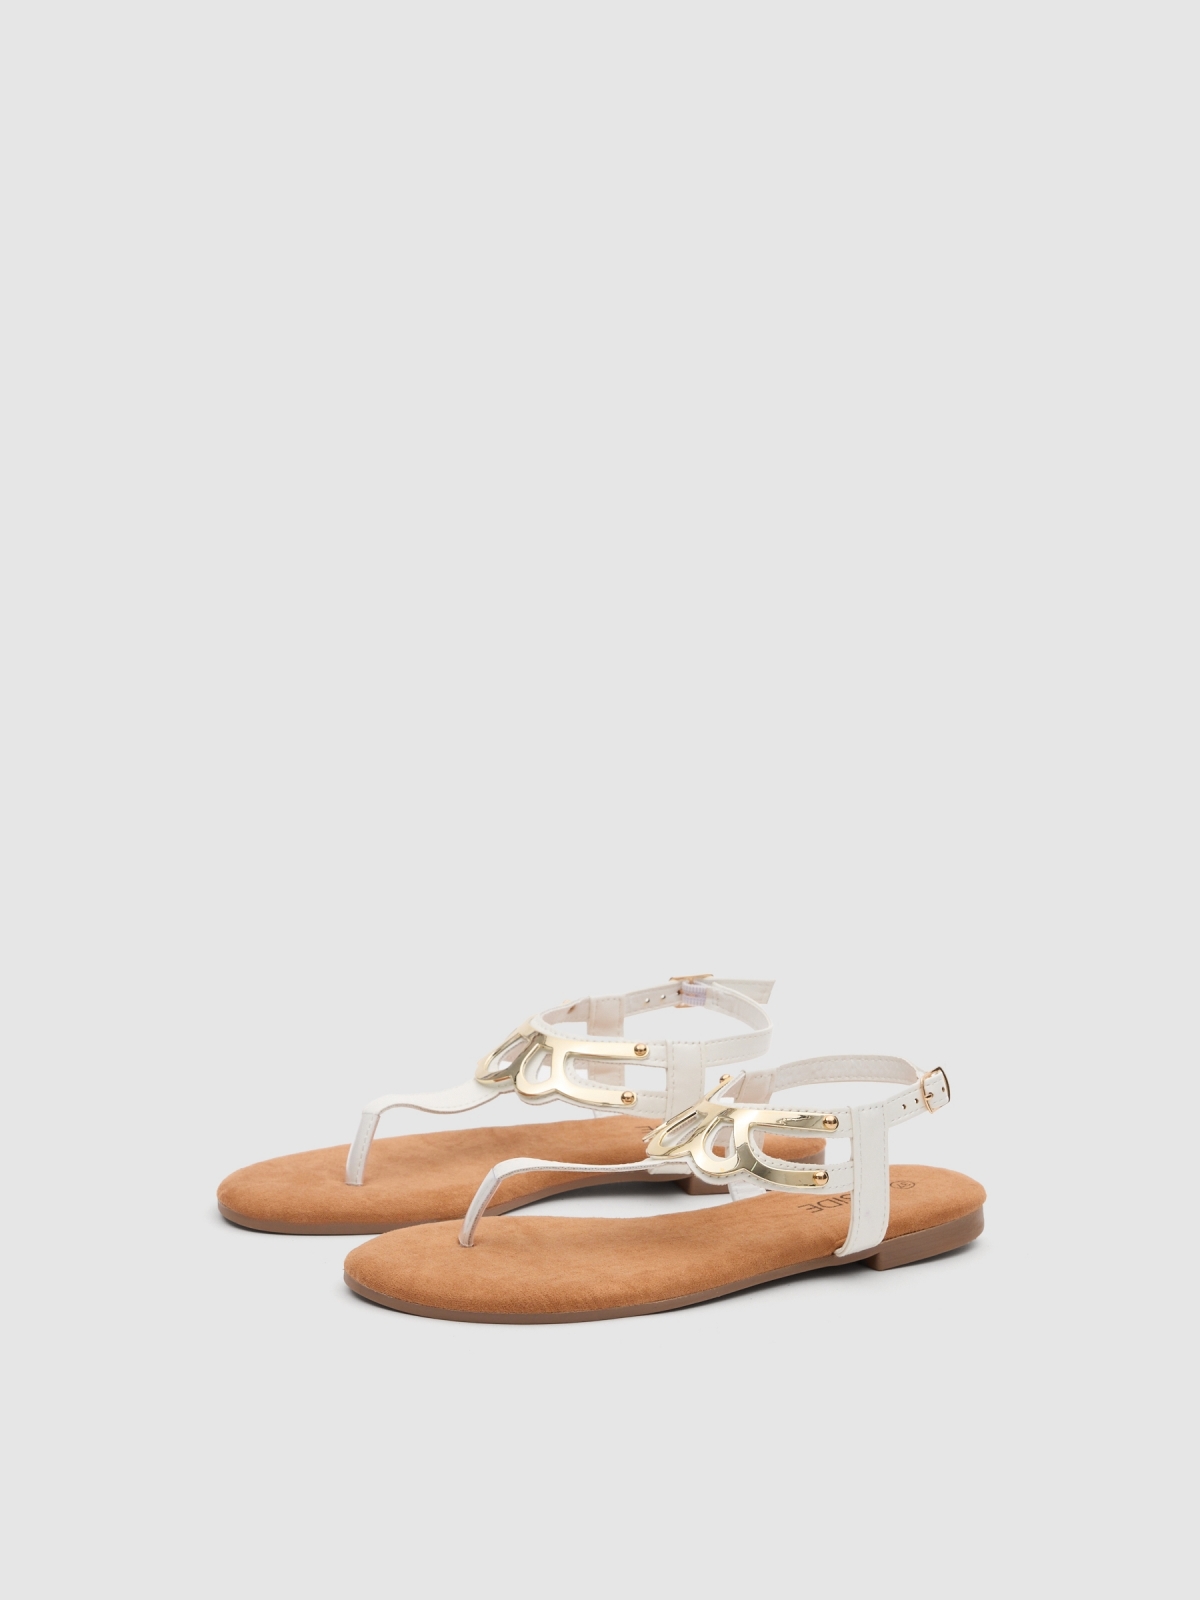 Sandália apliques dourados branco vista frontal 45º